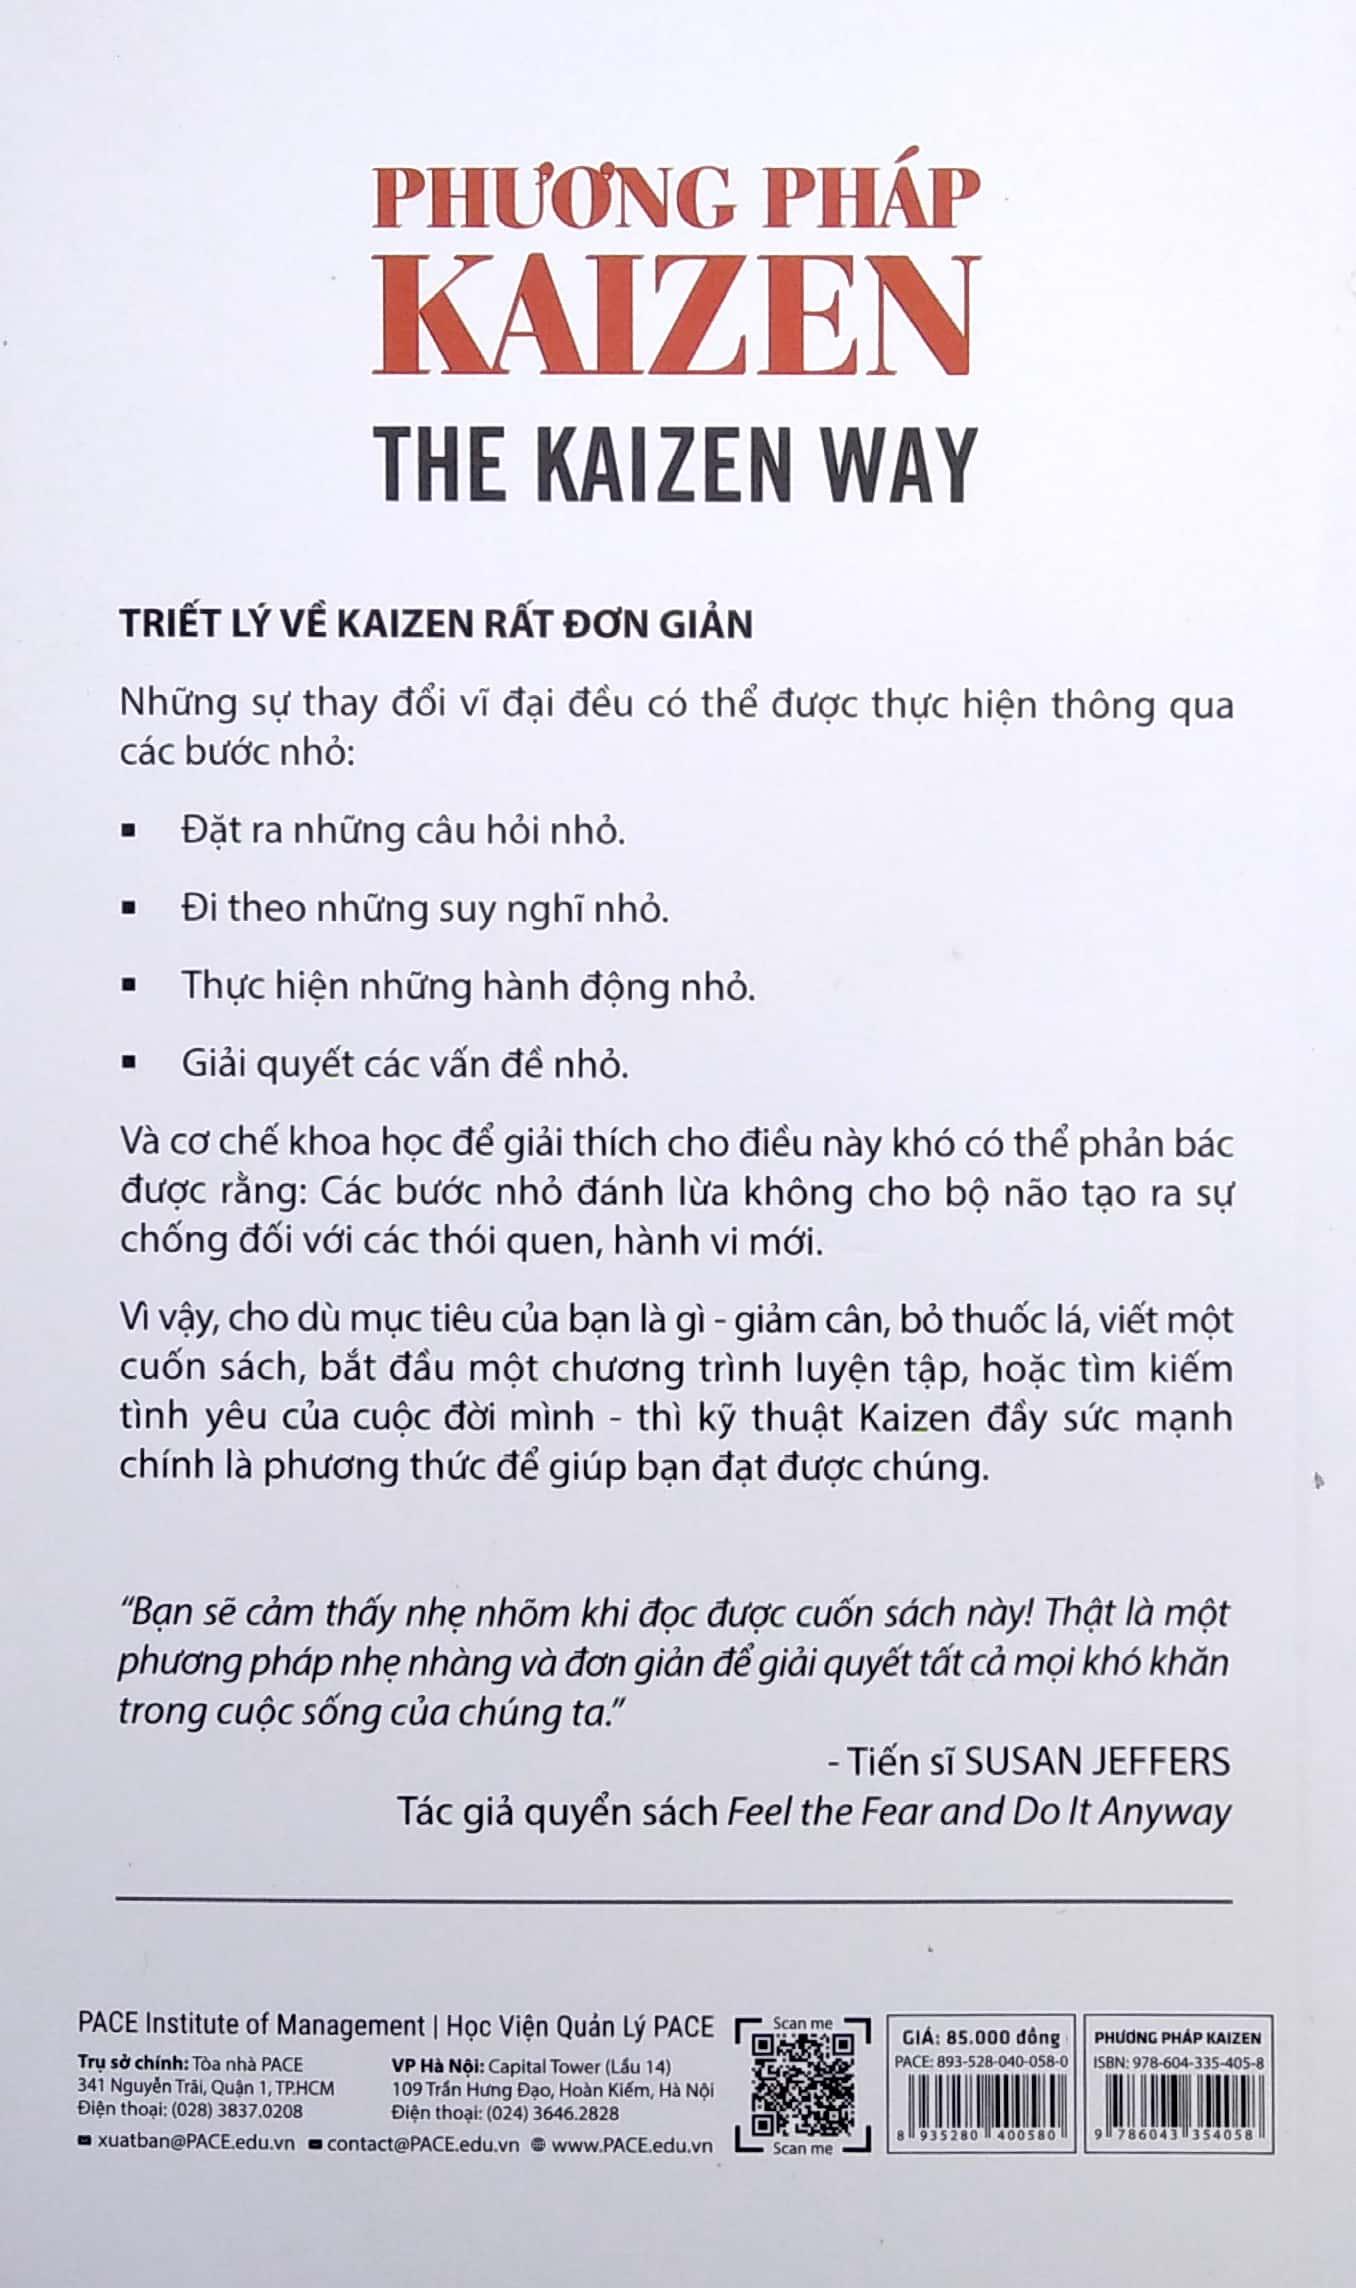 Phương Pháp Kaizen (The Kaizen Way) - Tái Bản